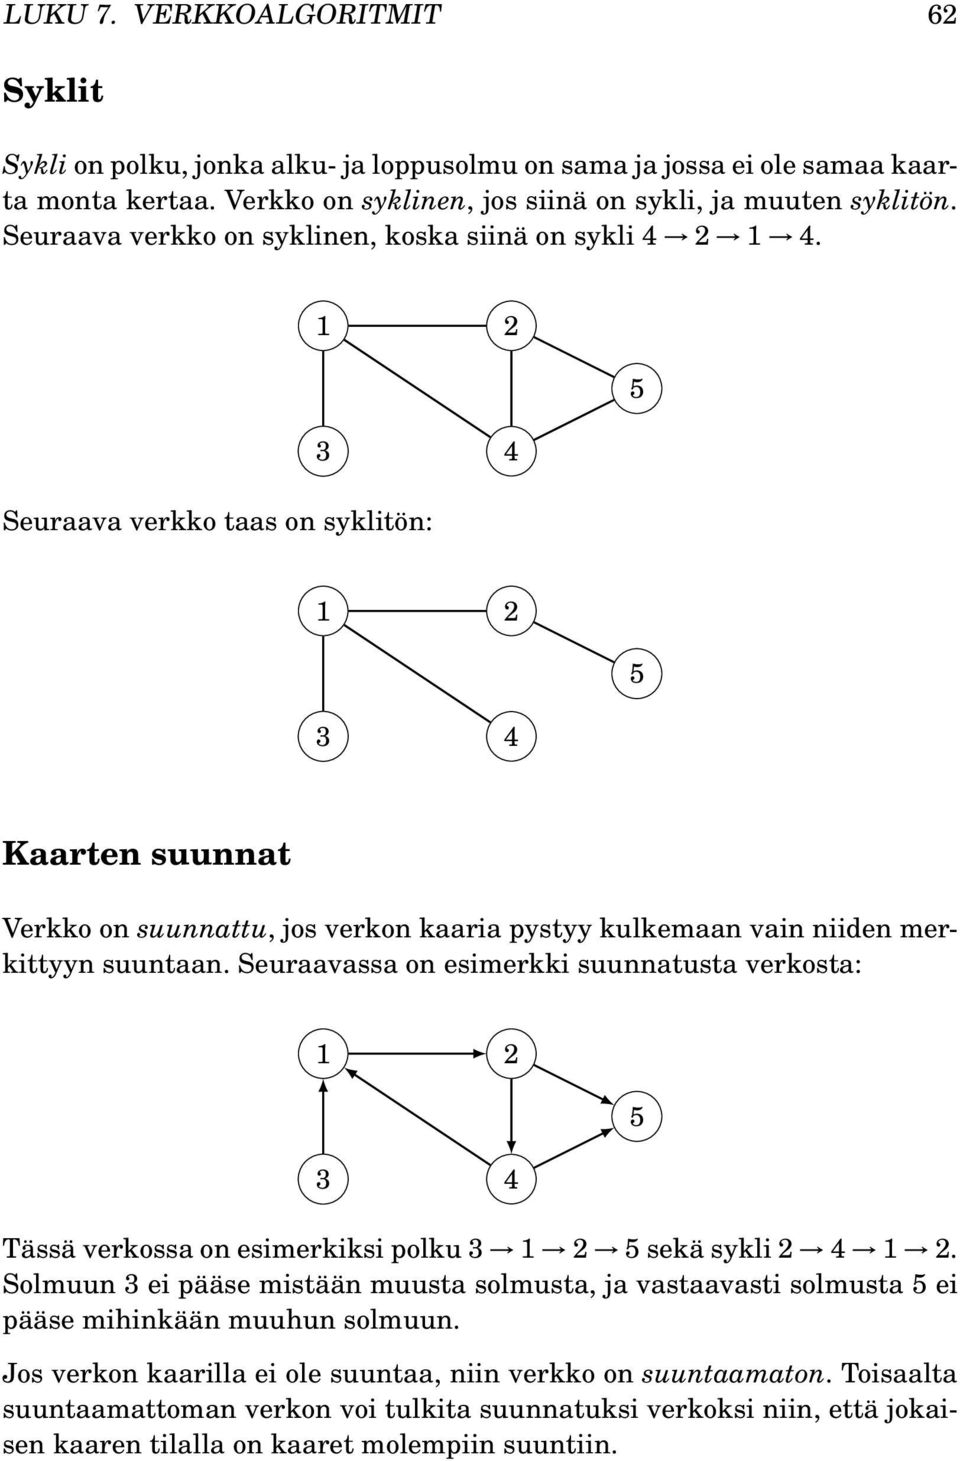 Seuraavassa on esimerkki suunnatusta verkosta: Tässä verkossa on esimerkiksi polku 3 2 sekä sykli 2 2.